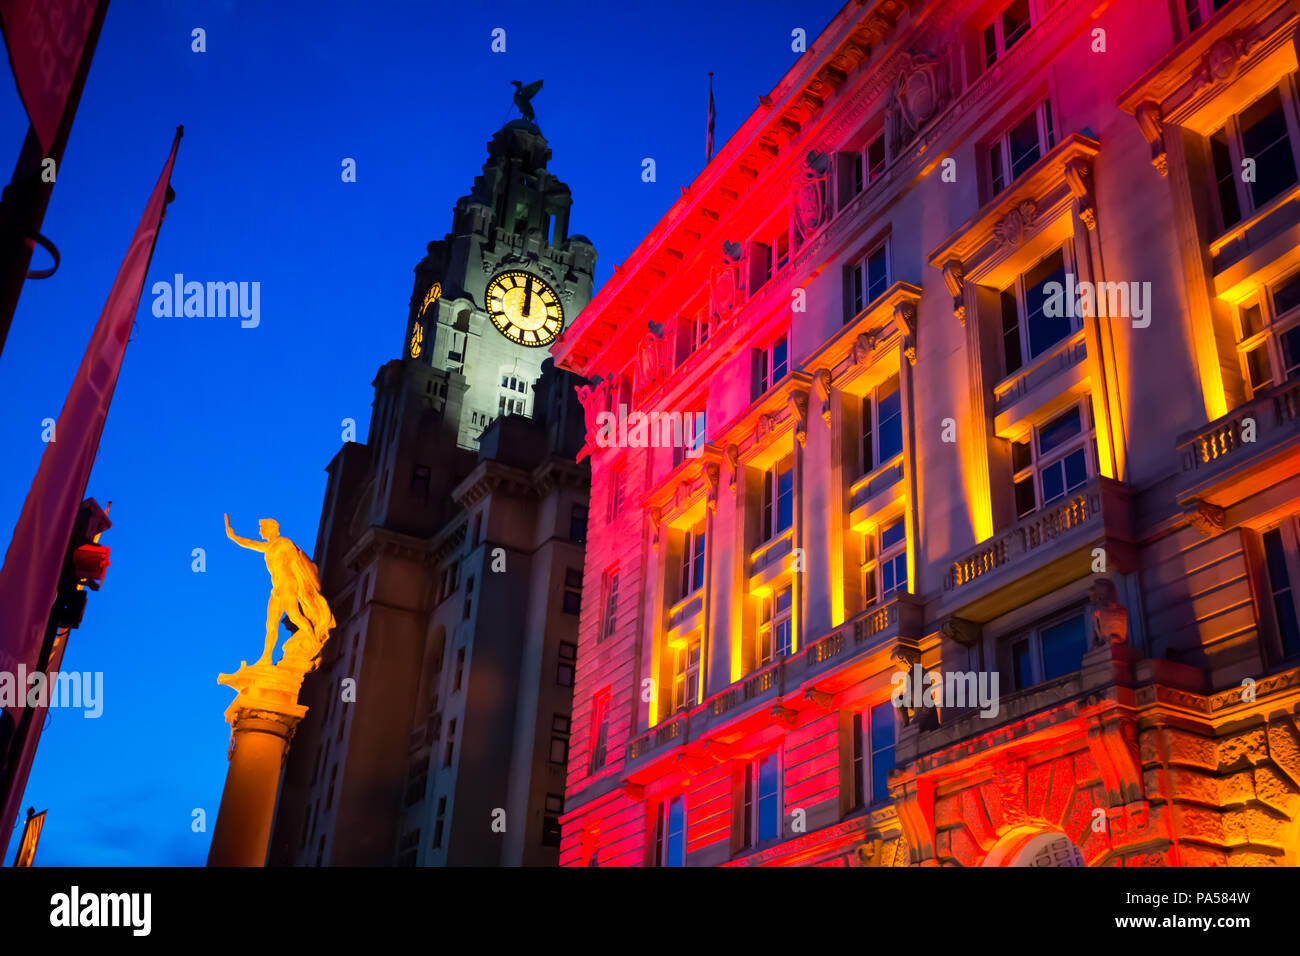 Notte Tempo shot del porto di Liverpool Building illuminato in rosso e luci di colore arancione, con il Royal Liver Building in background Foto Stock